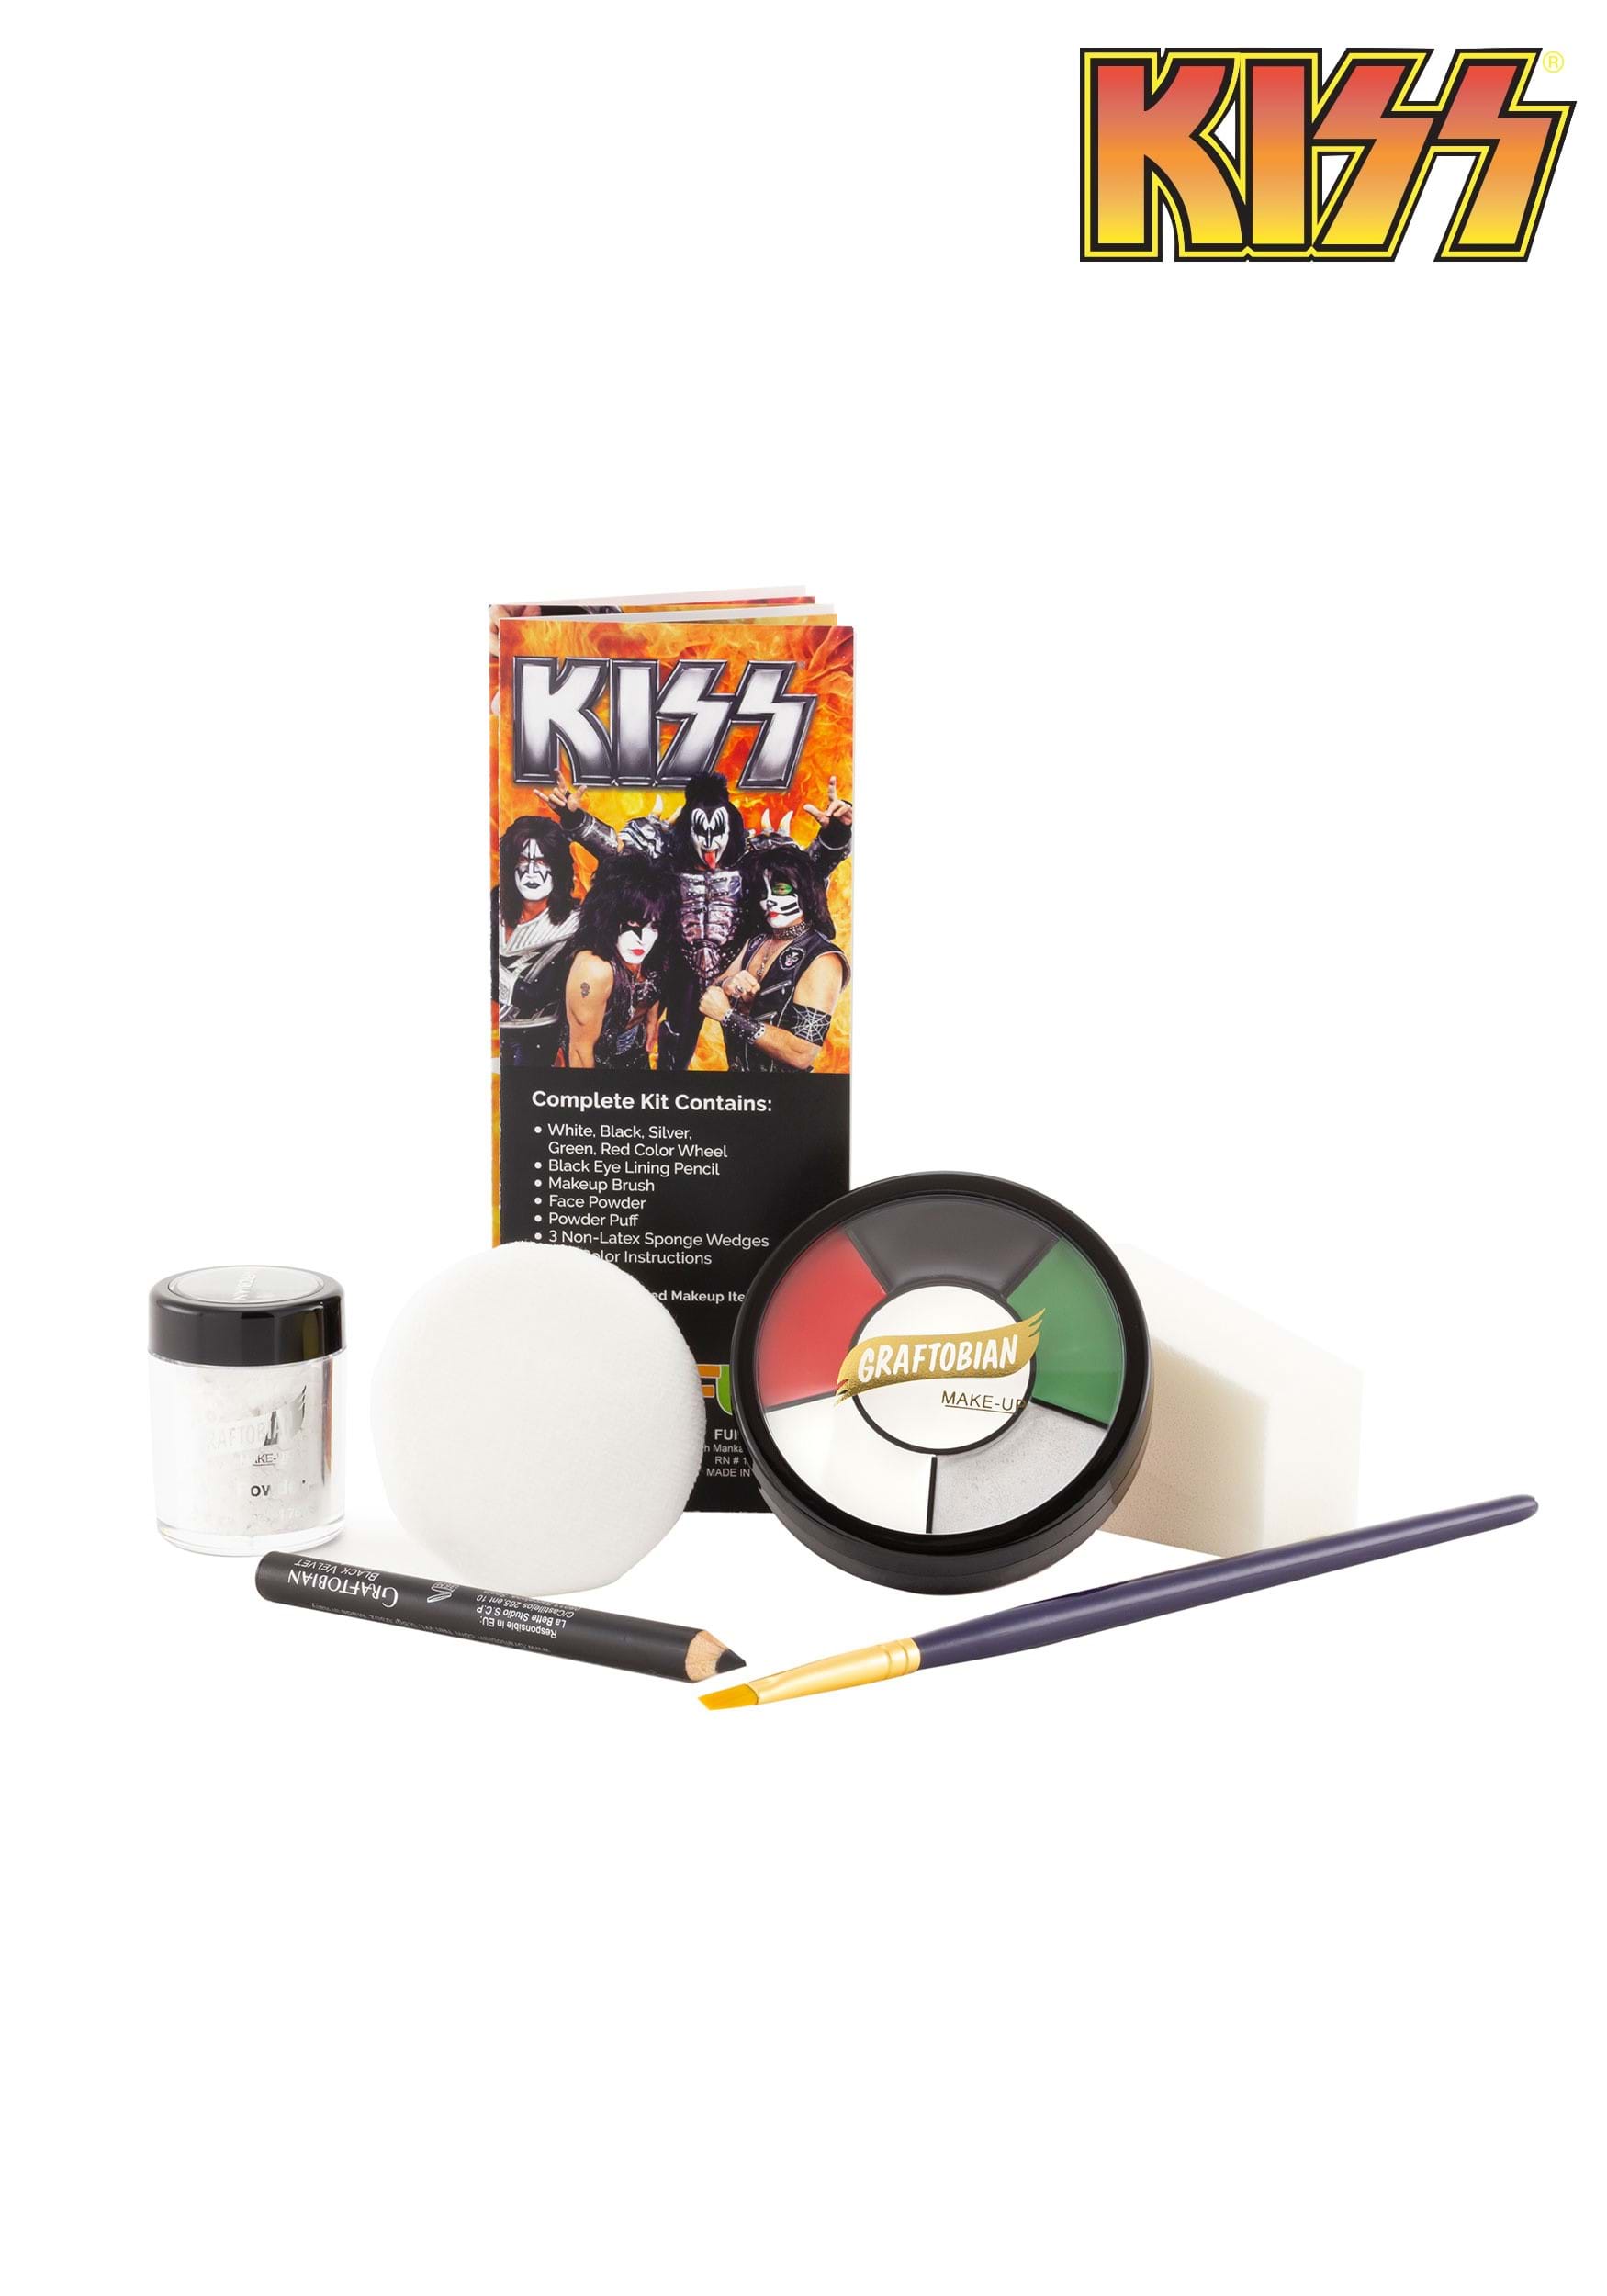 Makeup Kit For Kiss Band